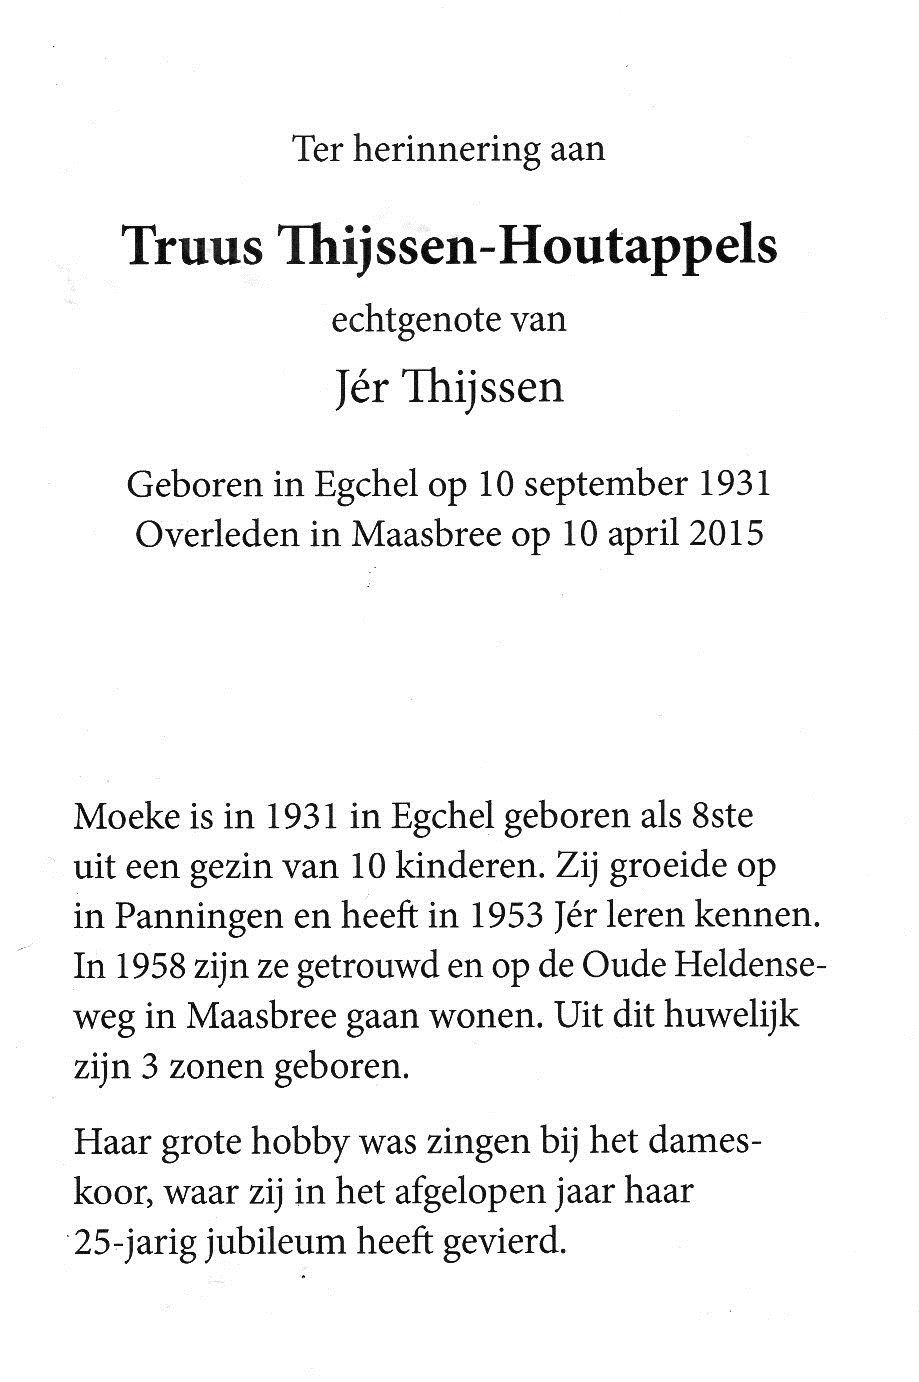 150410 Truus Thijssen-Houtappels 2